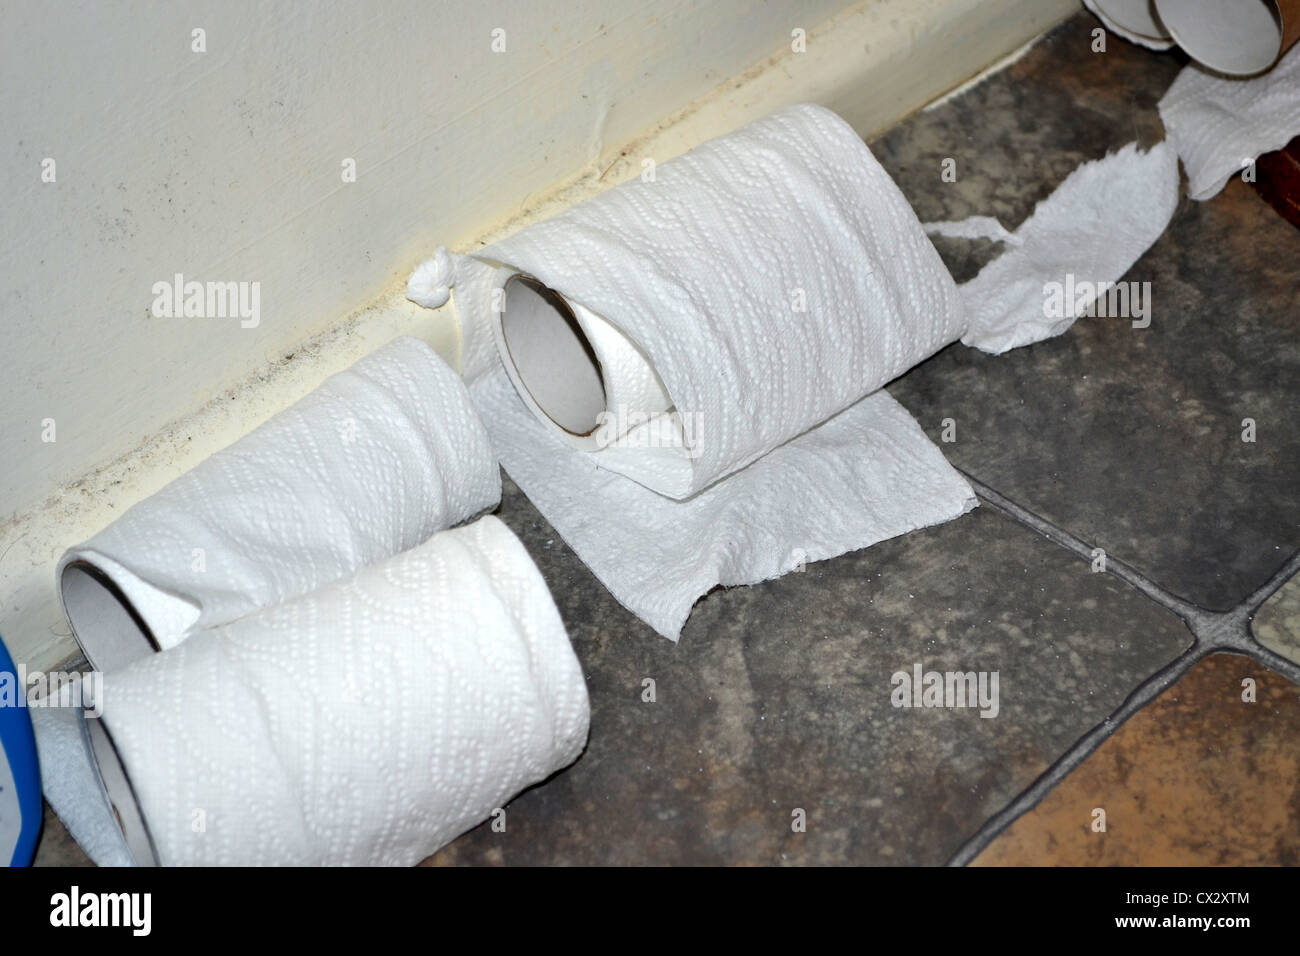 Salle de bains désordonnées des rouleaux de papier de toilette Banque D'Images